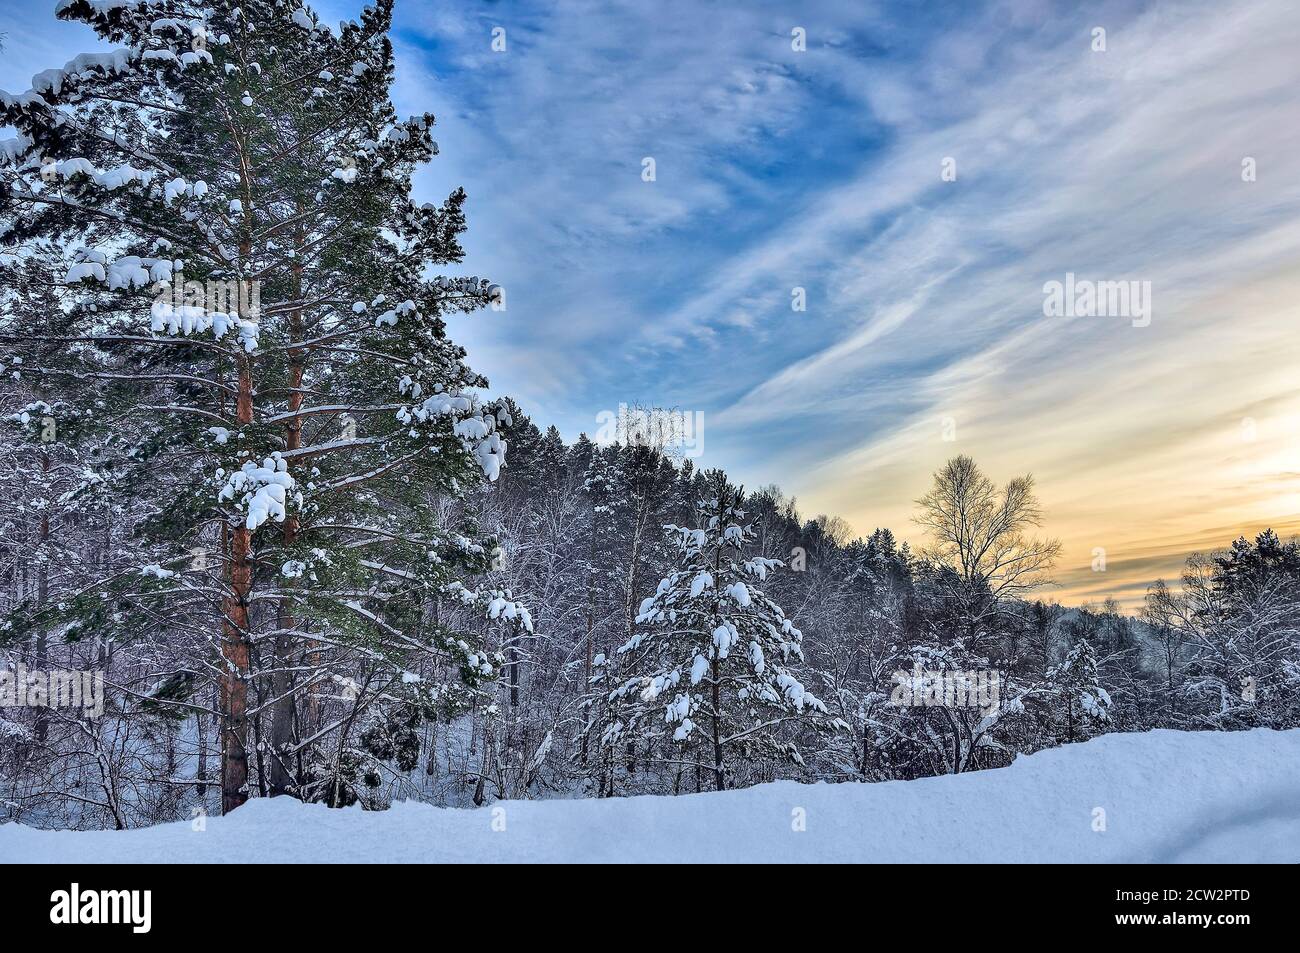 Idyllischer Winteruntergang über verschneiten Kiefernwäldern - Winterwunderland. Immergrüne Nadelbäume unter flauschigem Schnee in goldener Abenddämmerung. Wintert Stockfoto